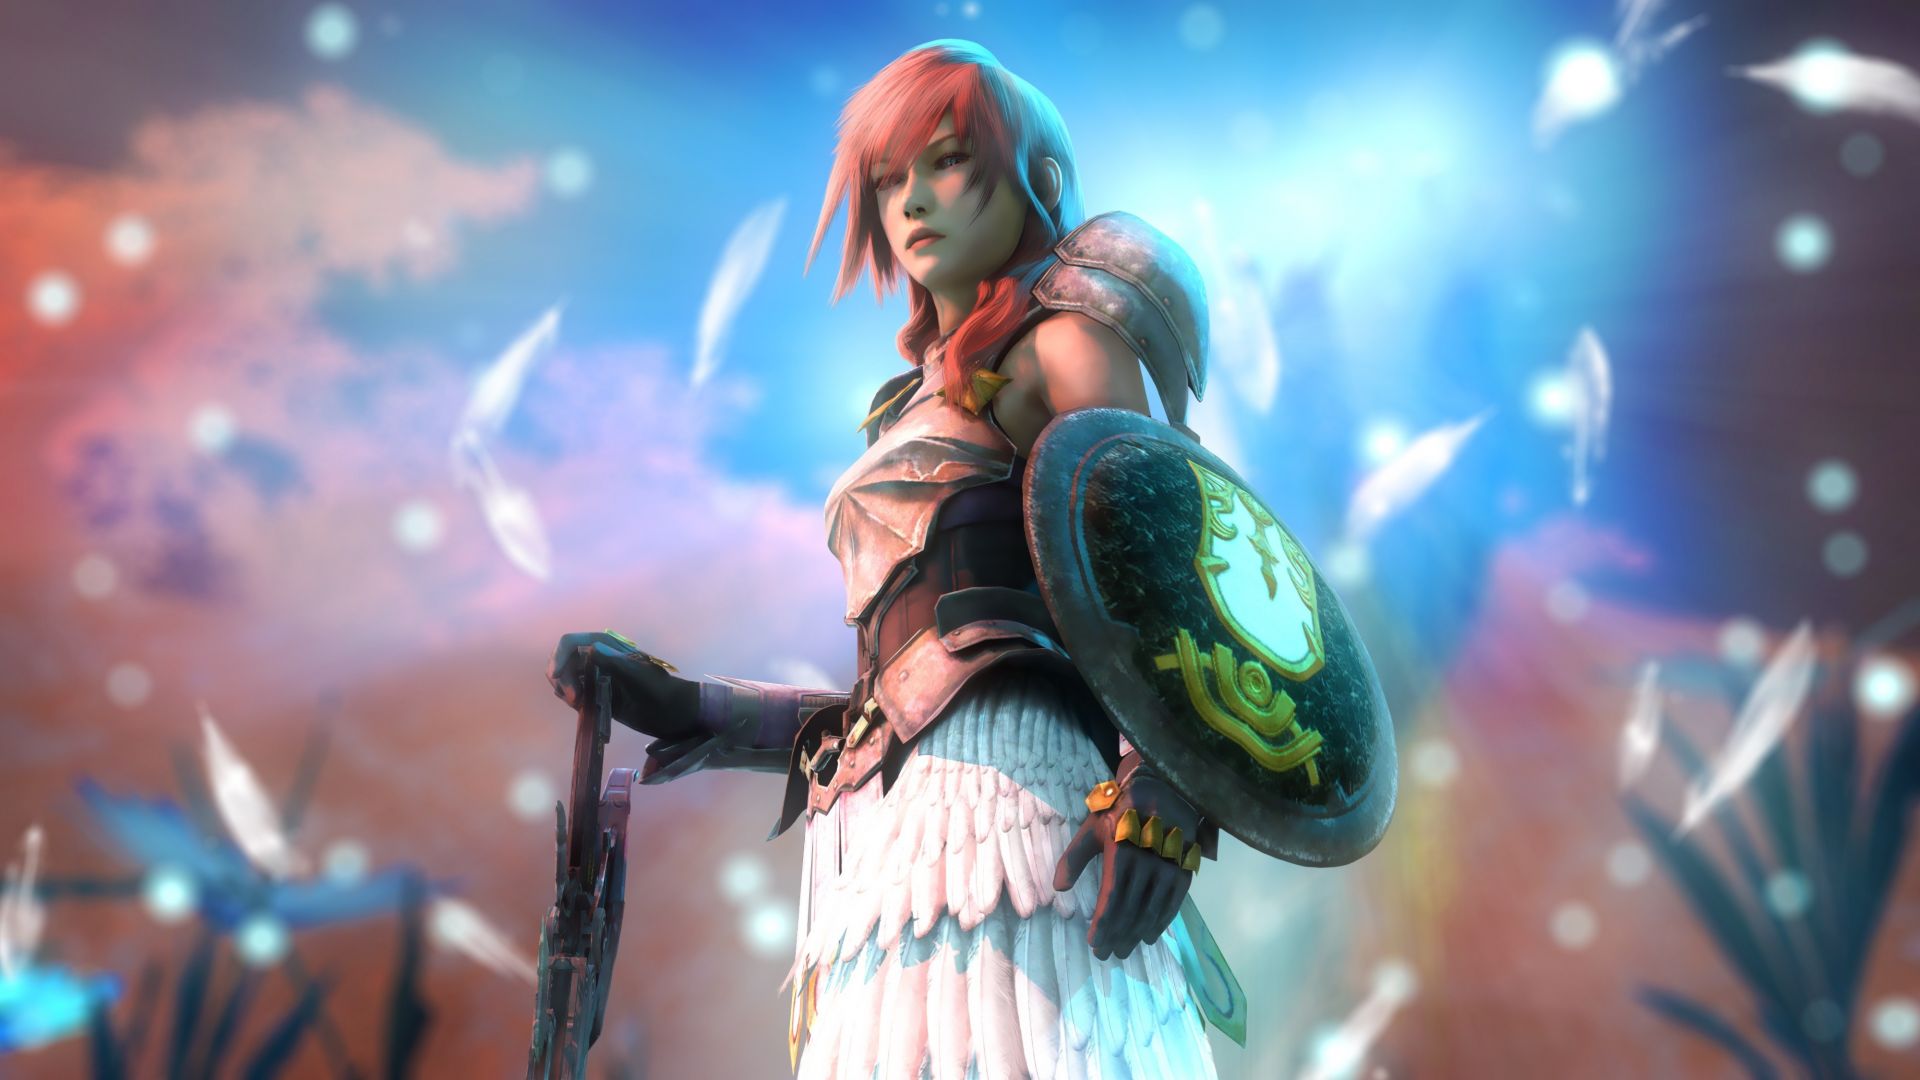 Wallpaper Final Fantasy XV: Episode Ignis, girl warrior, lightning, video game, 4k